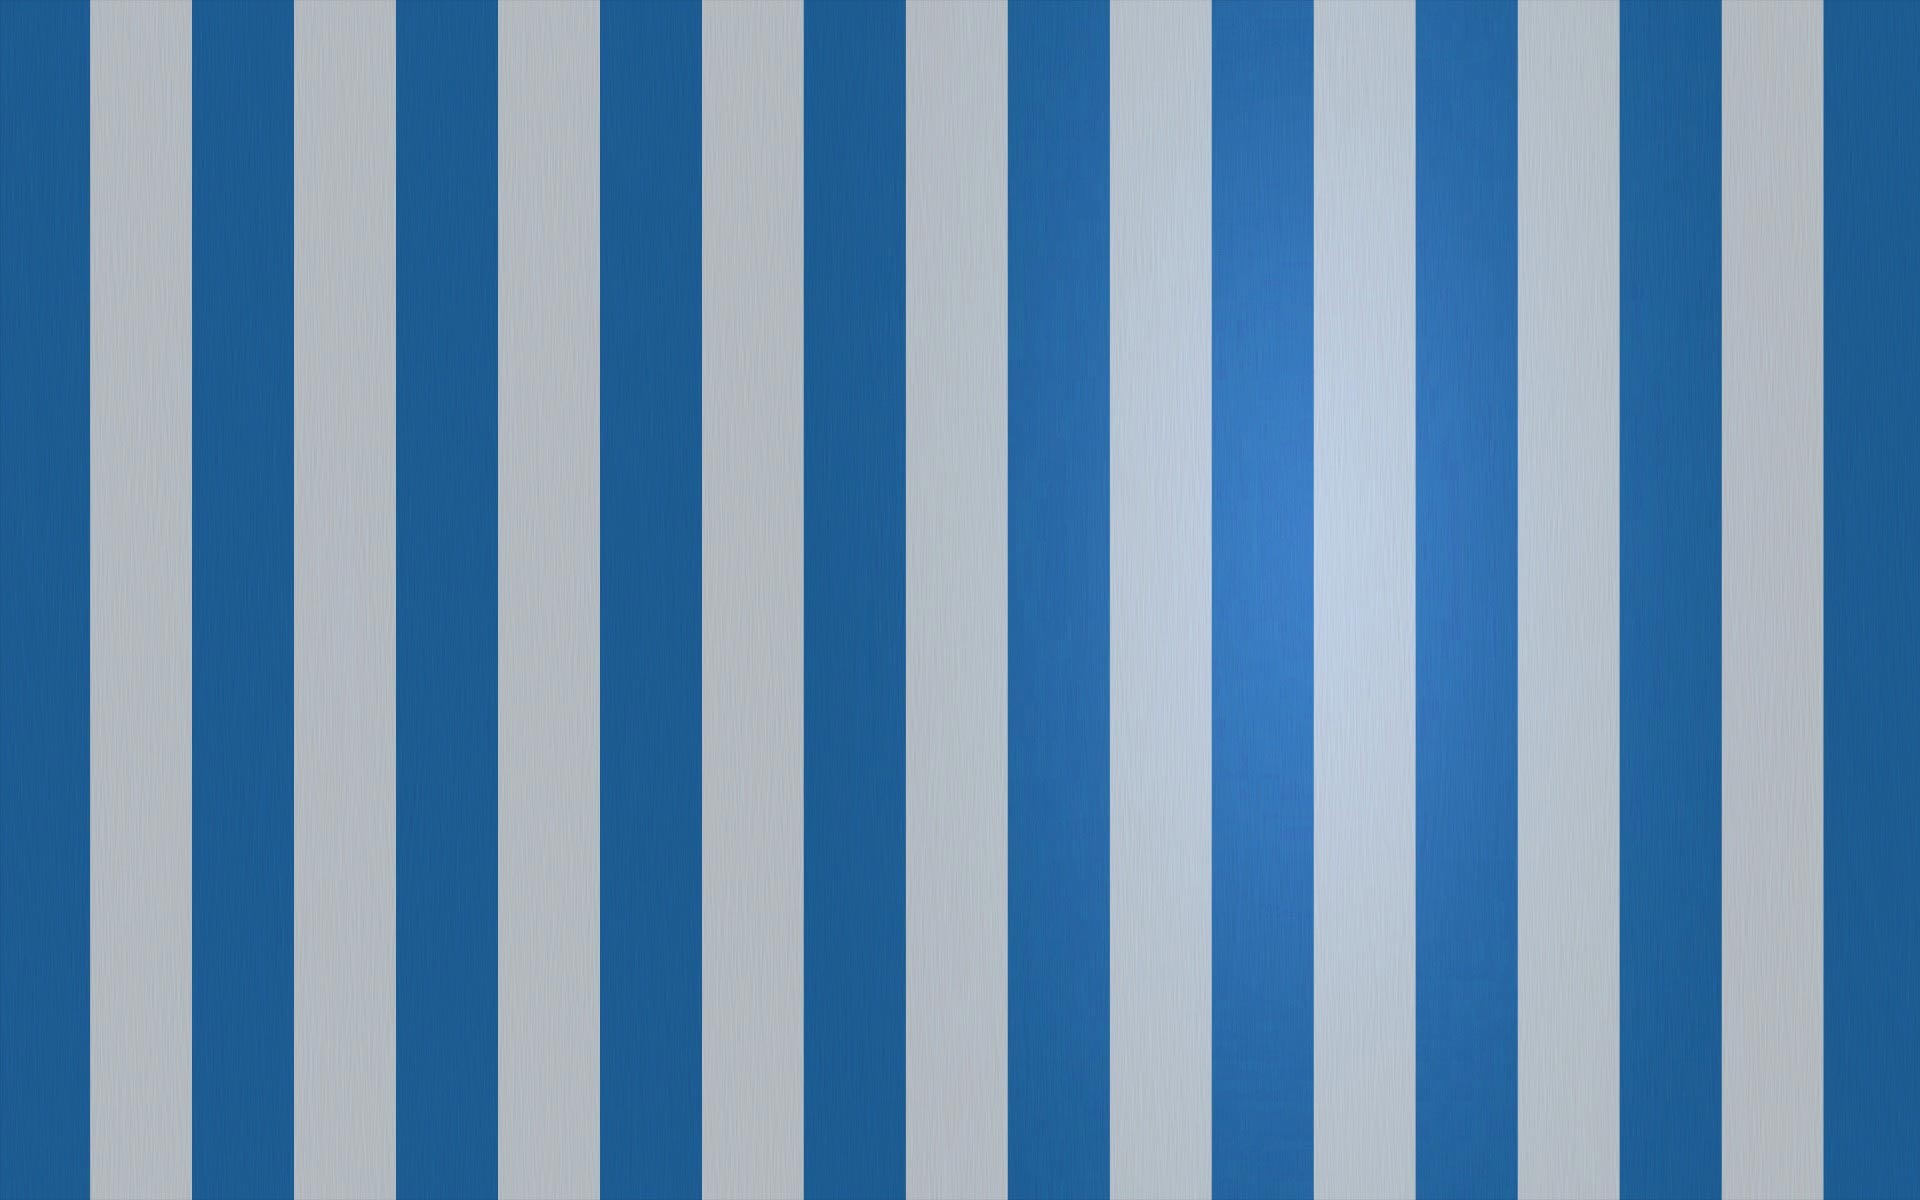 Download Stripes Striped Diagonal RoyaltyFree Stock Illustration Image  Blue  stripes background Striped background Stripes pattern design